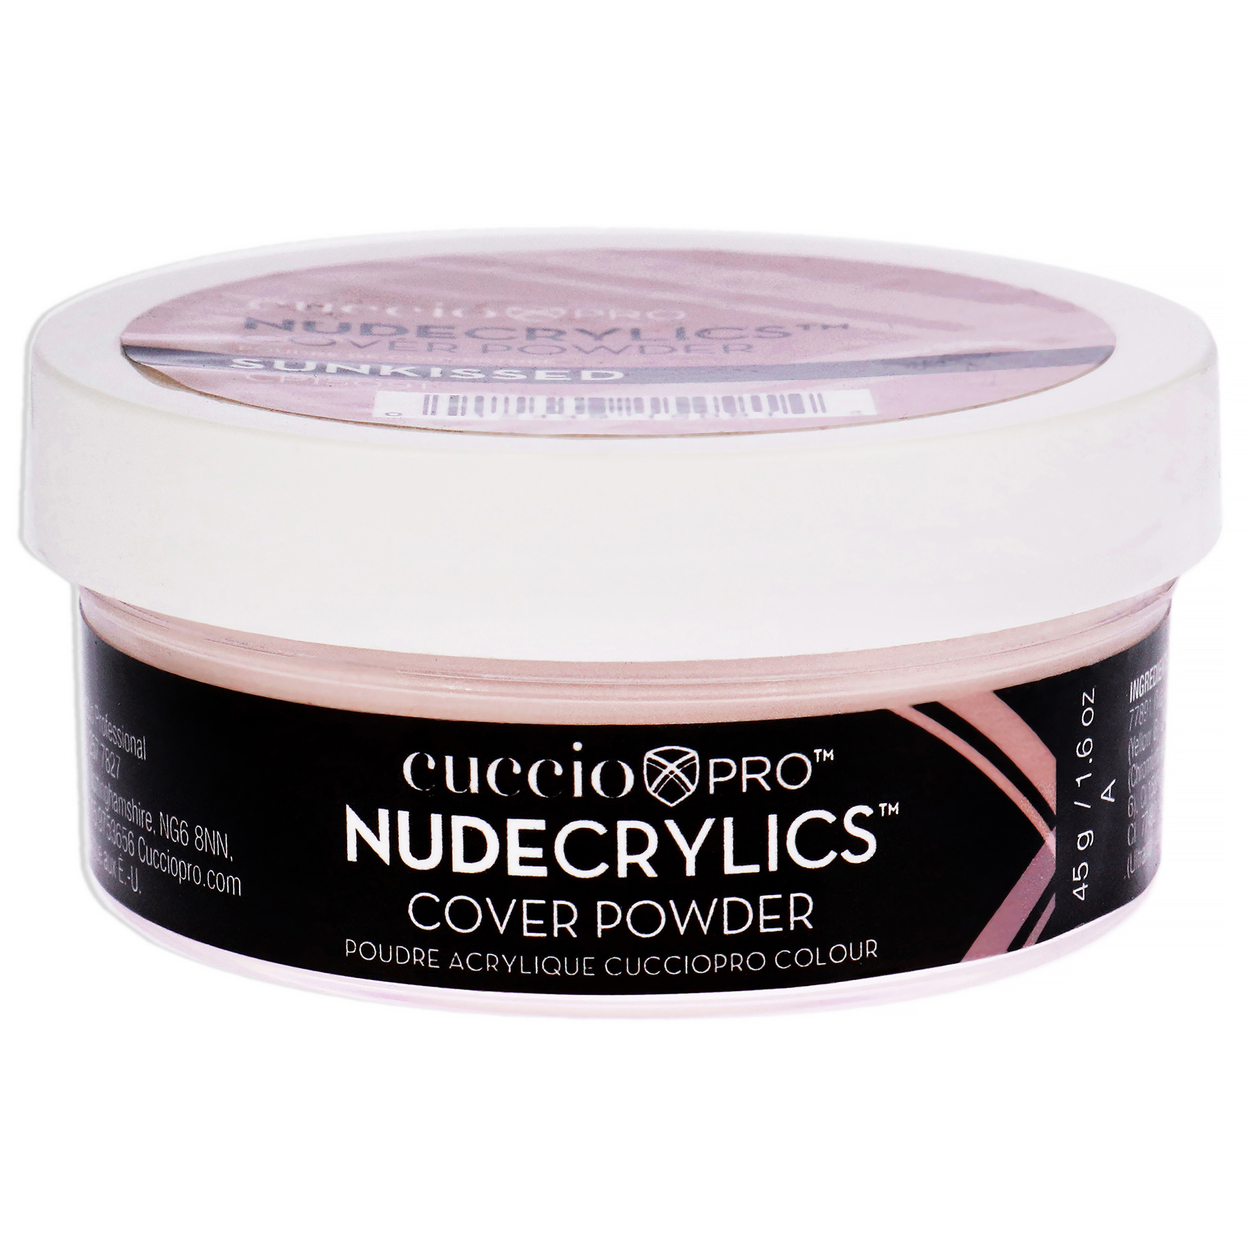 Cuccio Pro Nudecrylics Cover Powder - Sunkissed Acrylic Powder 1.6 Oz